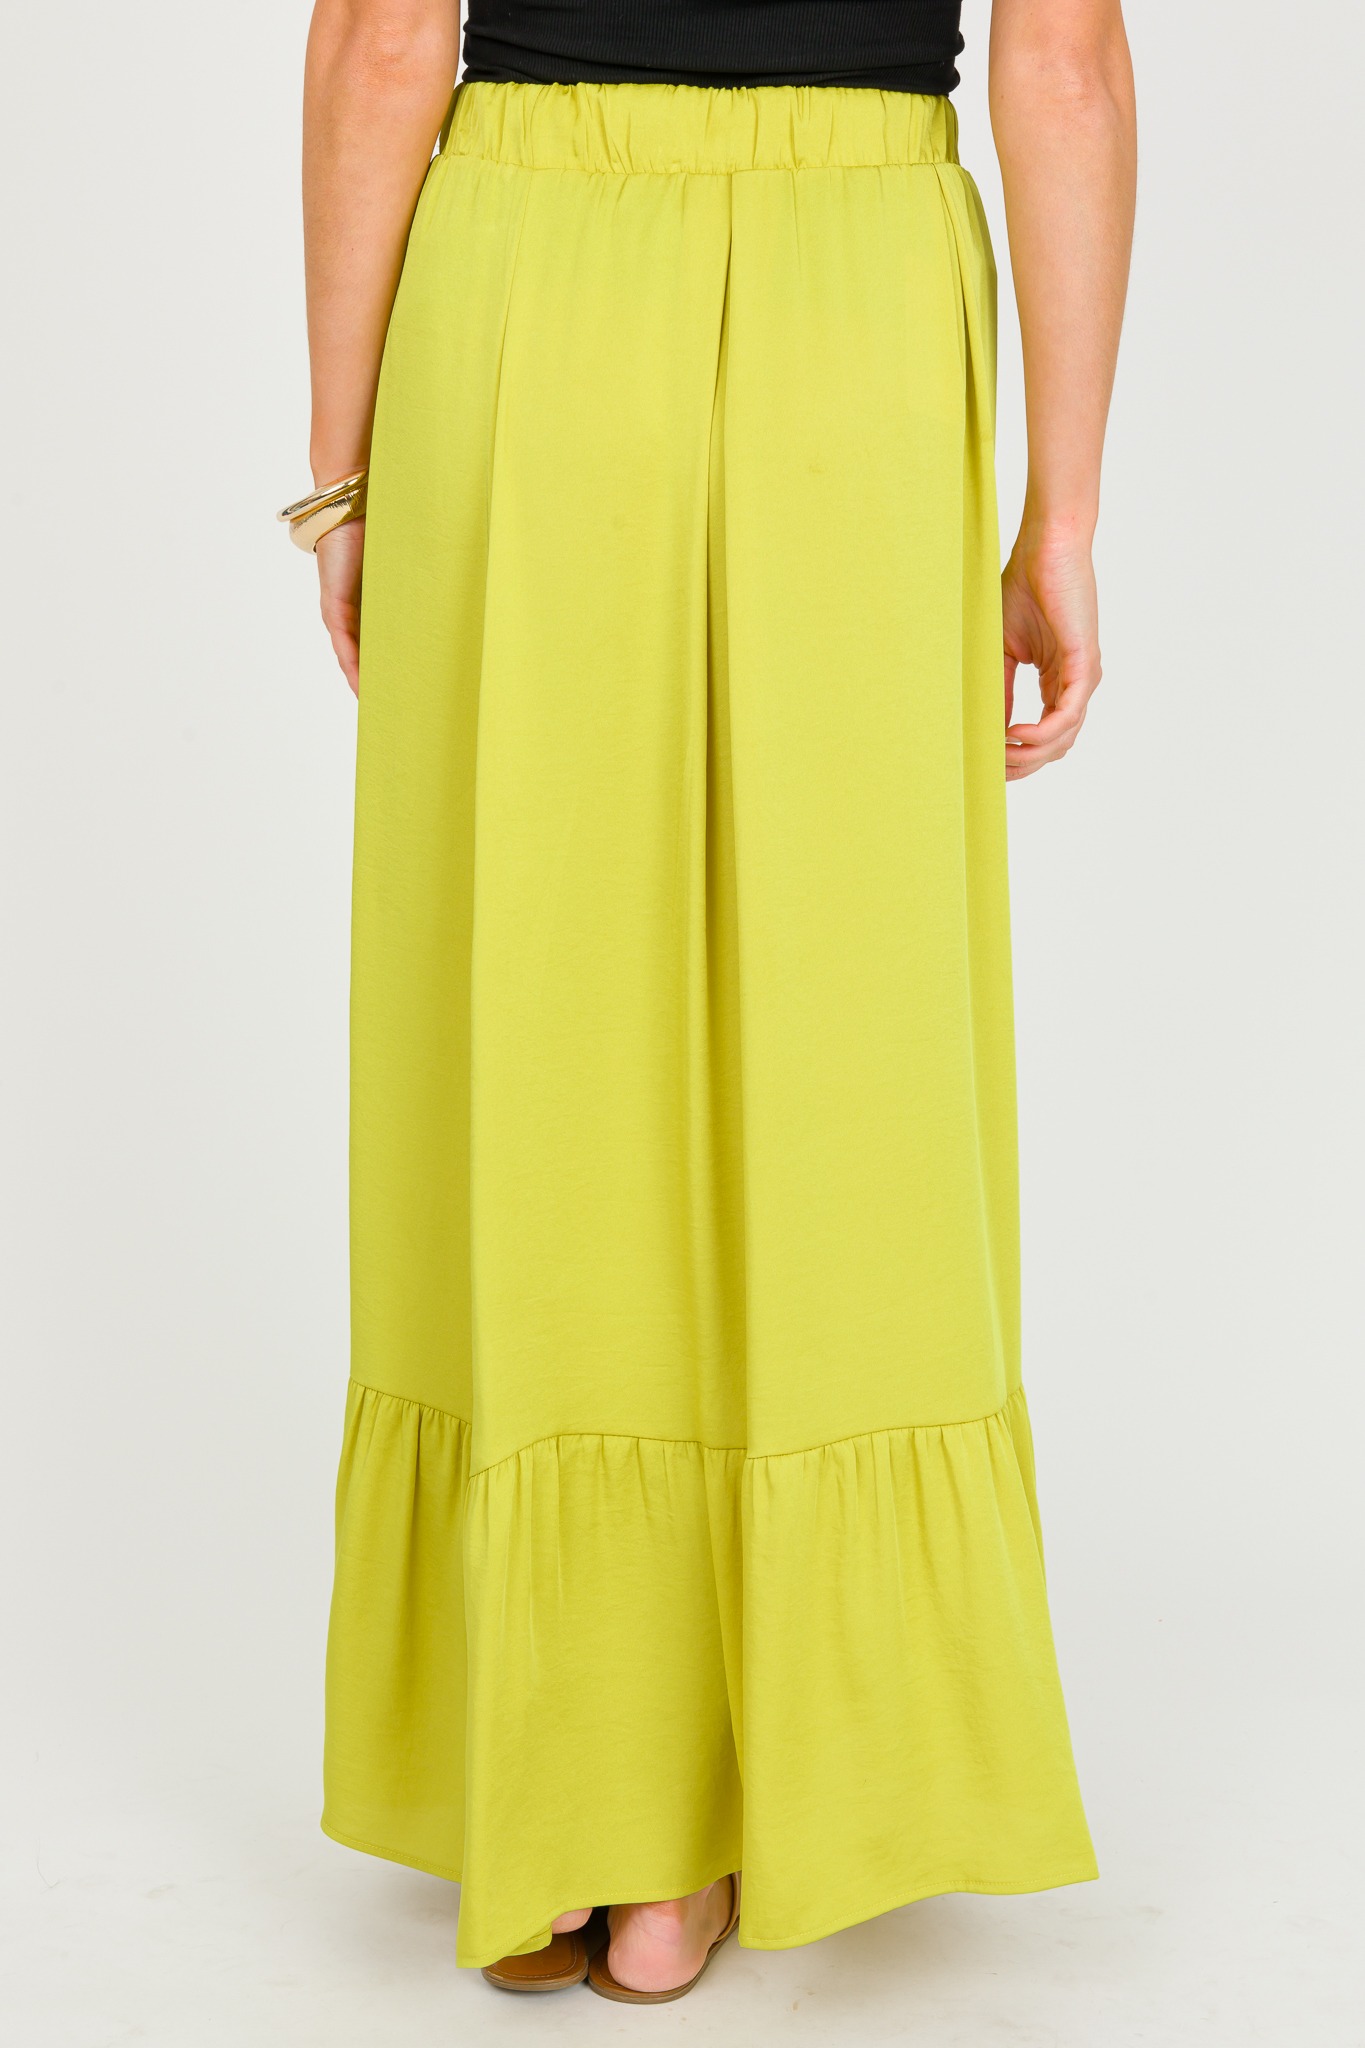 Silk Tiered Skirt, Chartreuse - 0326-128.jpg